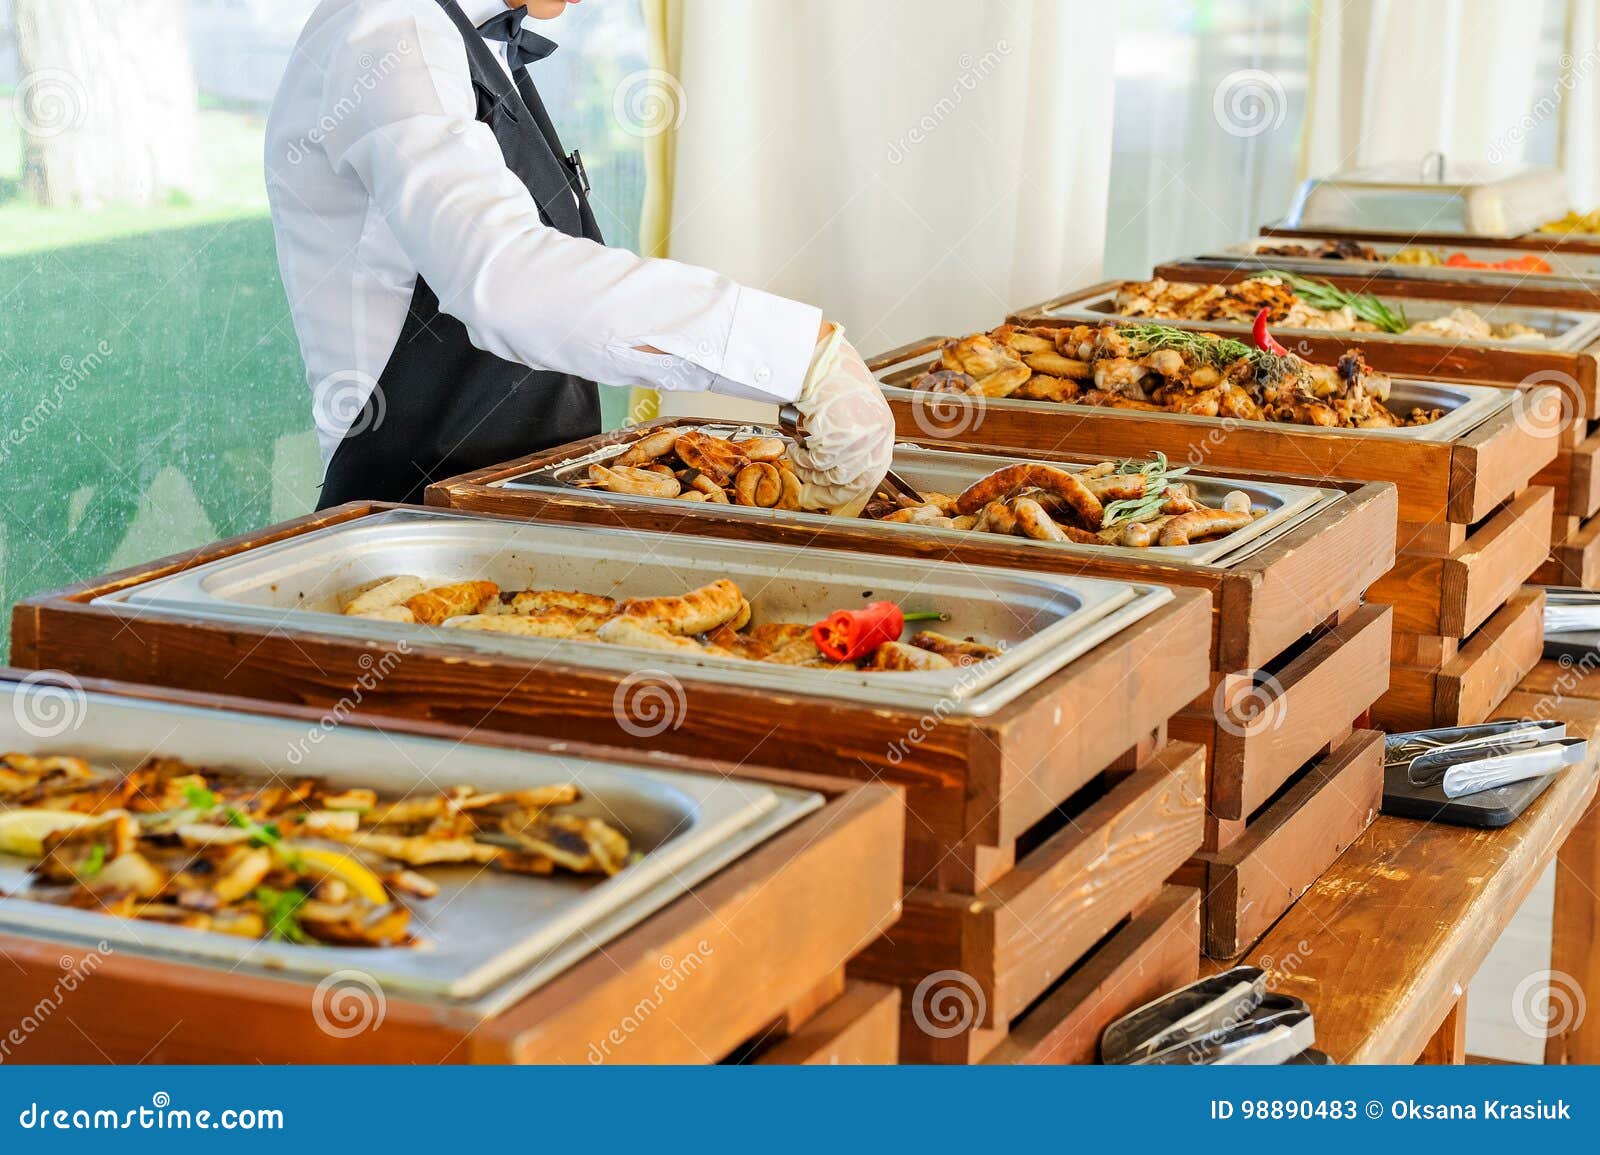 Restauration culinaire de dîner de buffet de cuisine extérieure Groupe de personnes dans tous que vous pouvez manger Diner le concept de partie de célébration de nourriture Service lors de la réunion d'affaires, mariages Foyer sélectif